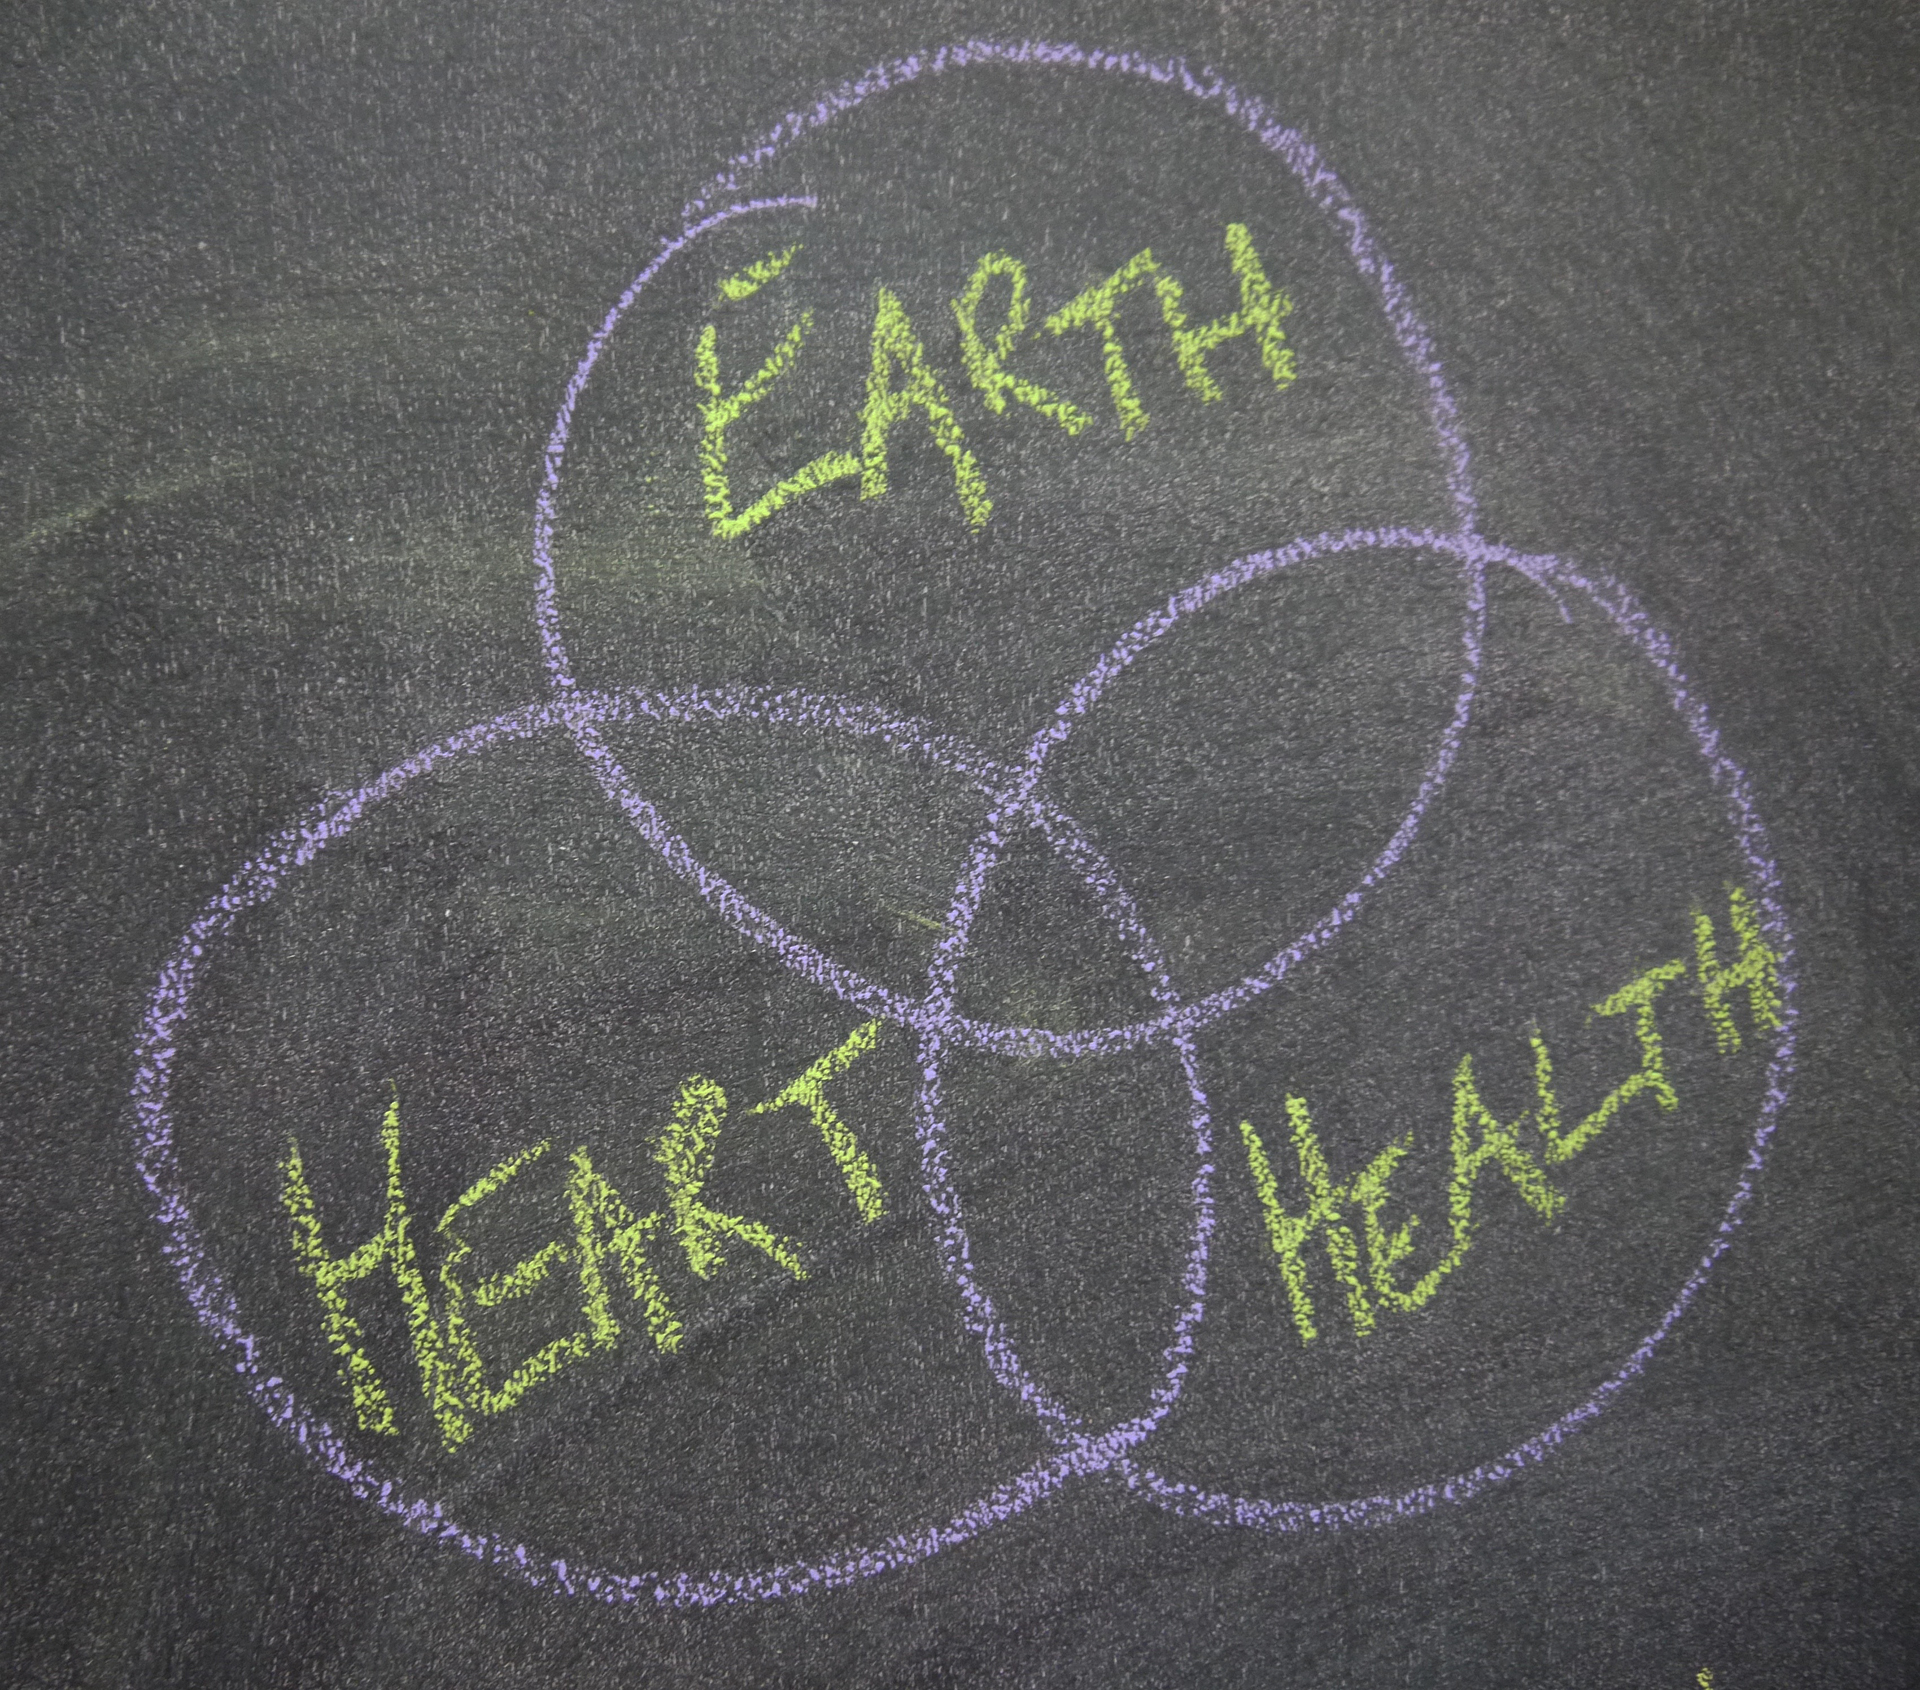 The three core values of Three Stone Hearth: Earth, Health and Heart.